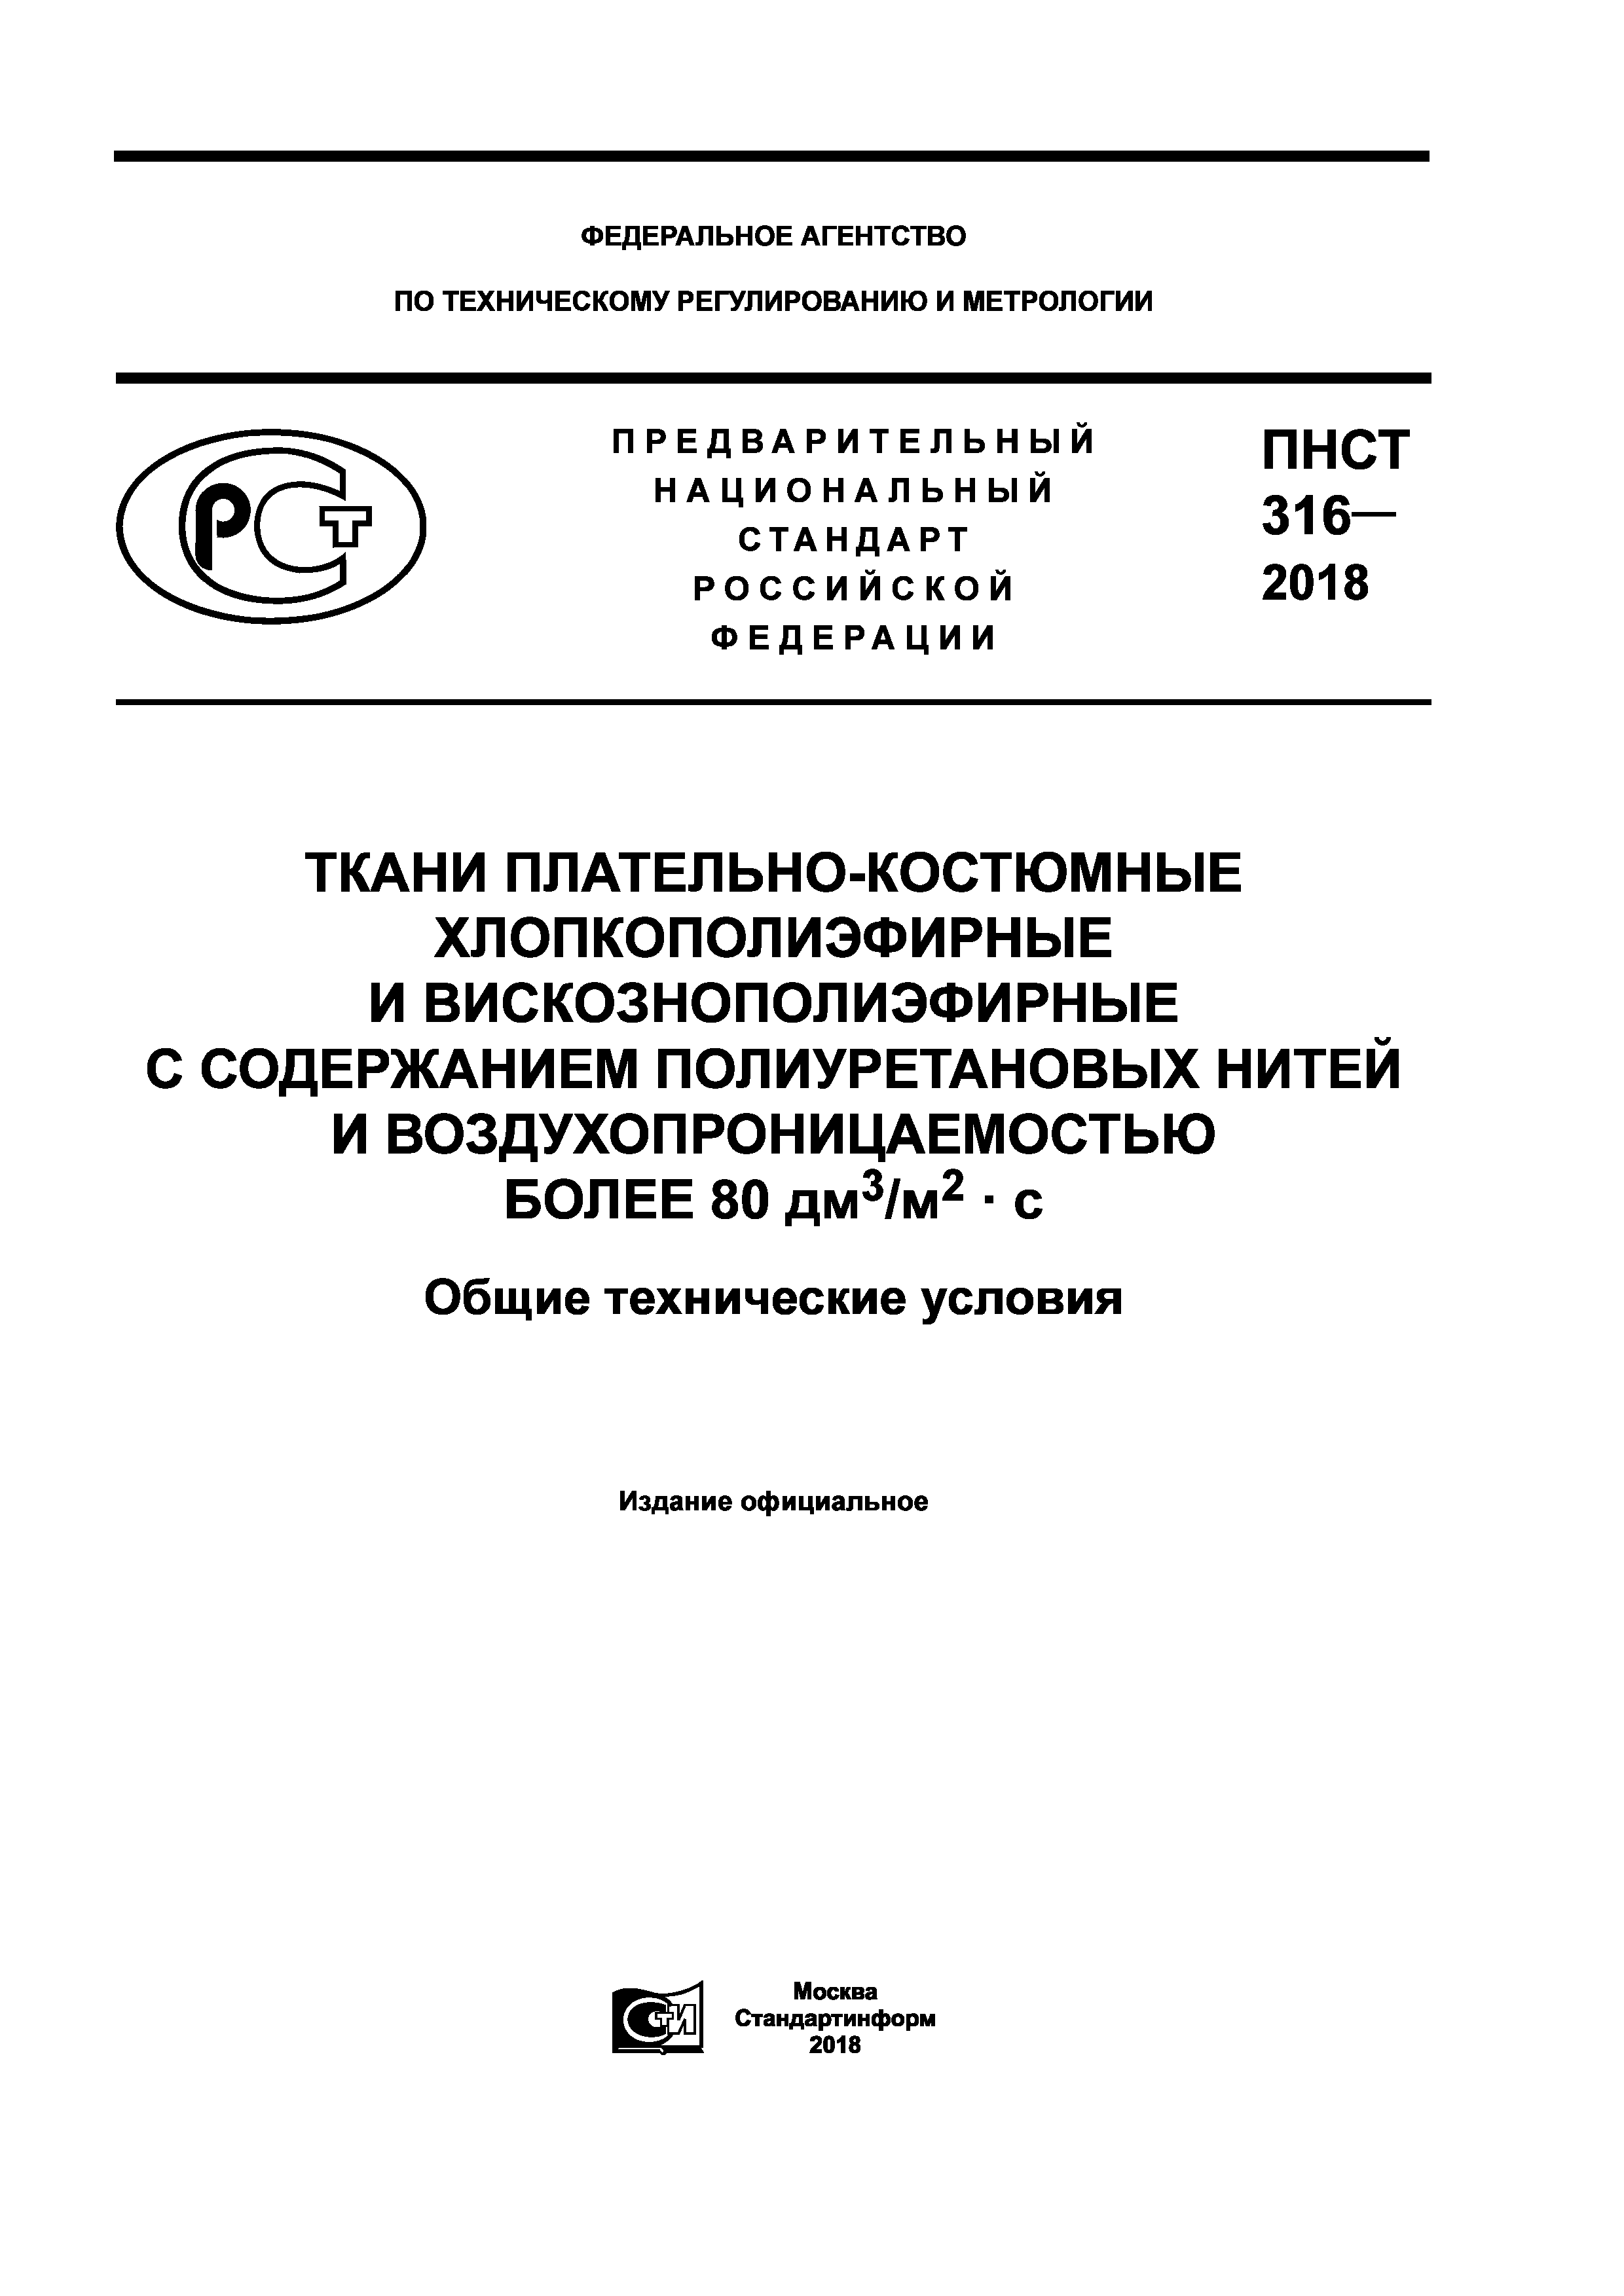 ПНСТ 316-2018